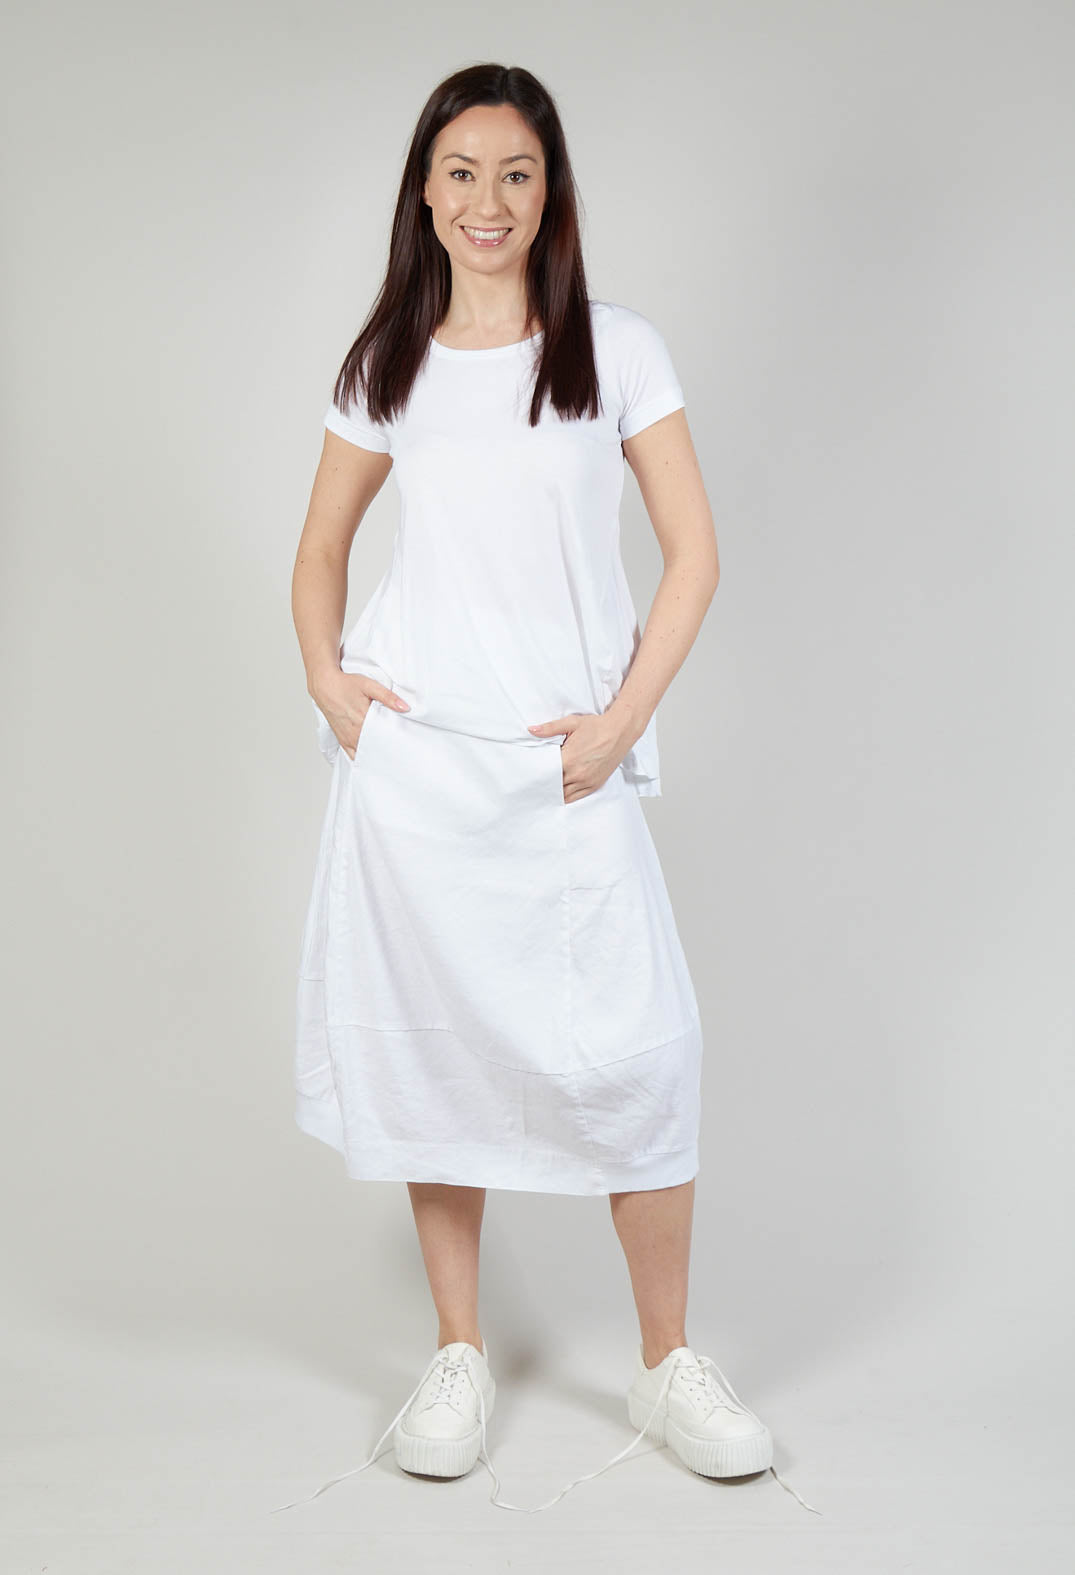 Tulip Hem Skirt in White